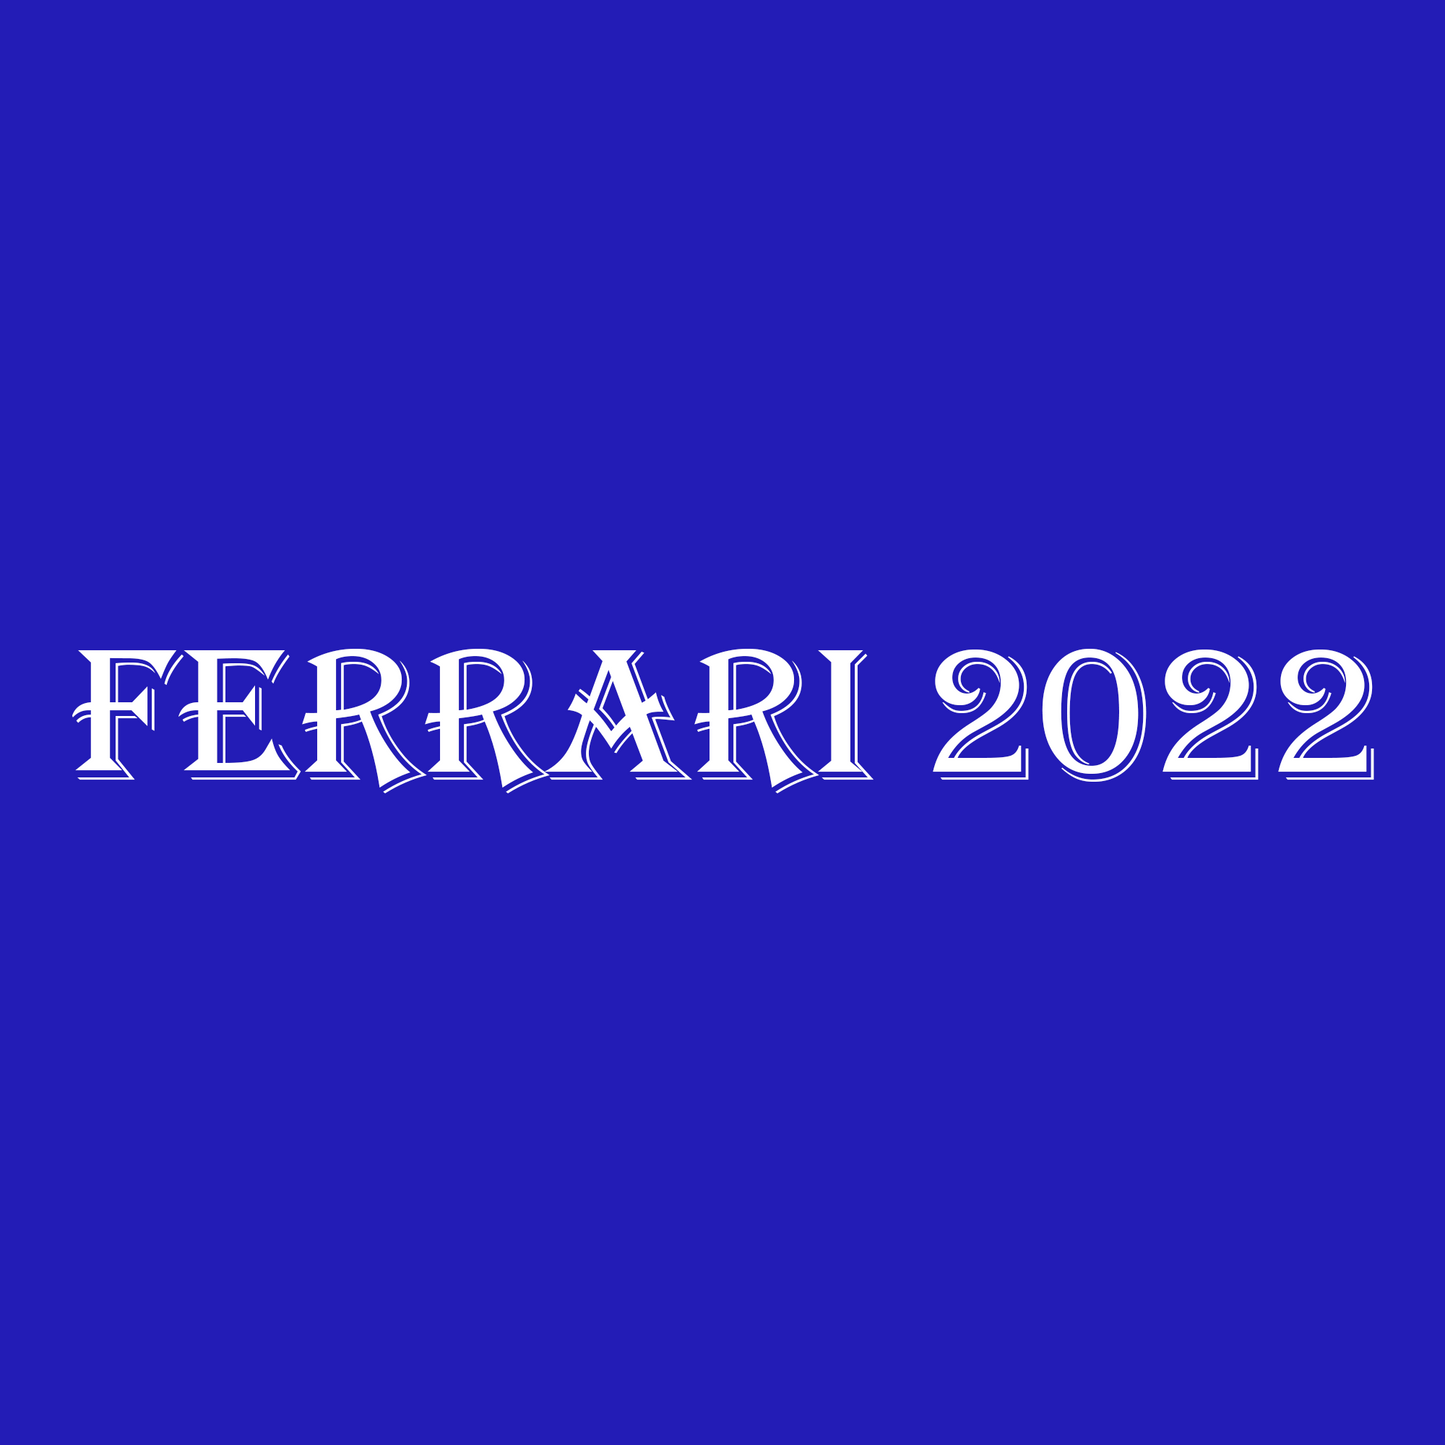 FERRARI 2022